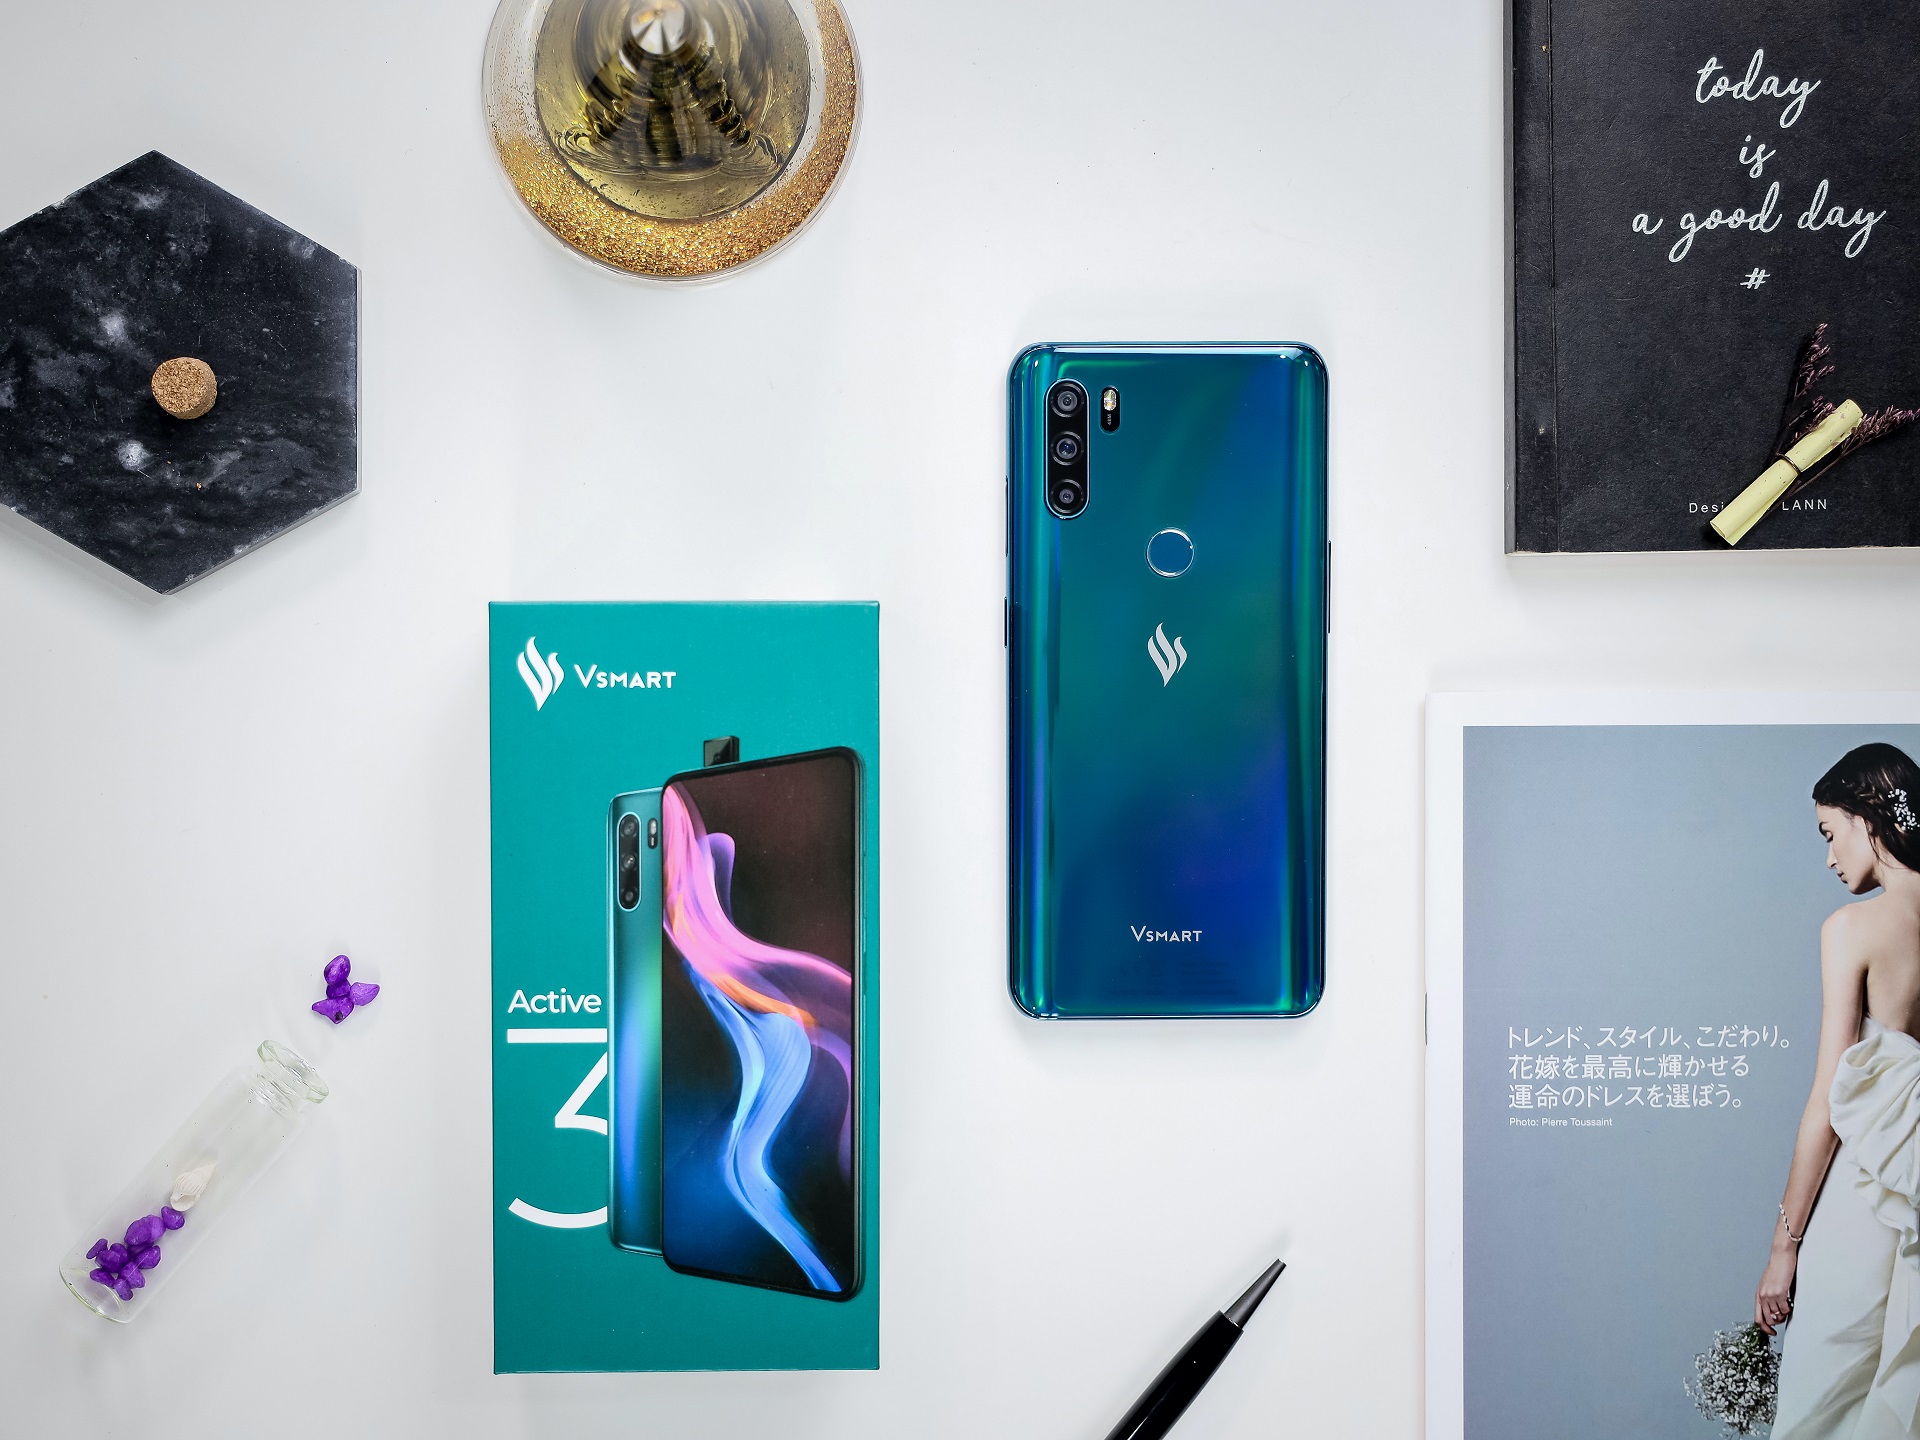 Tuần này có gì: Galaxy S10 Lite và Note10 Lite ra mắt, Energizer Mobile ra mắt điện thoại tại Việt Nam, Tết này xem phim gì,...